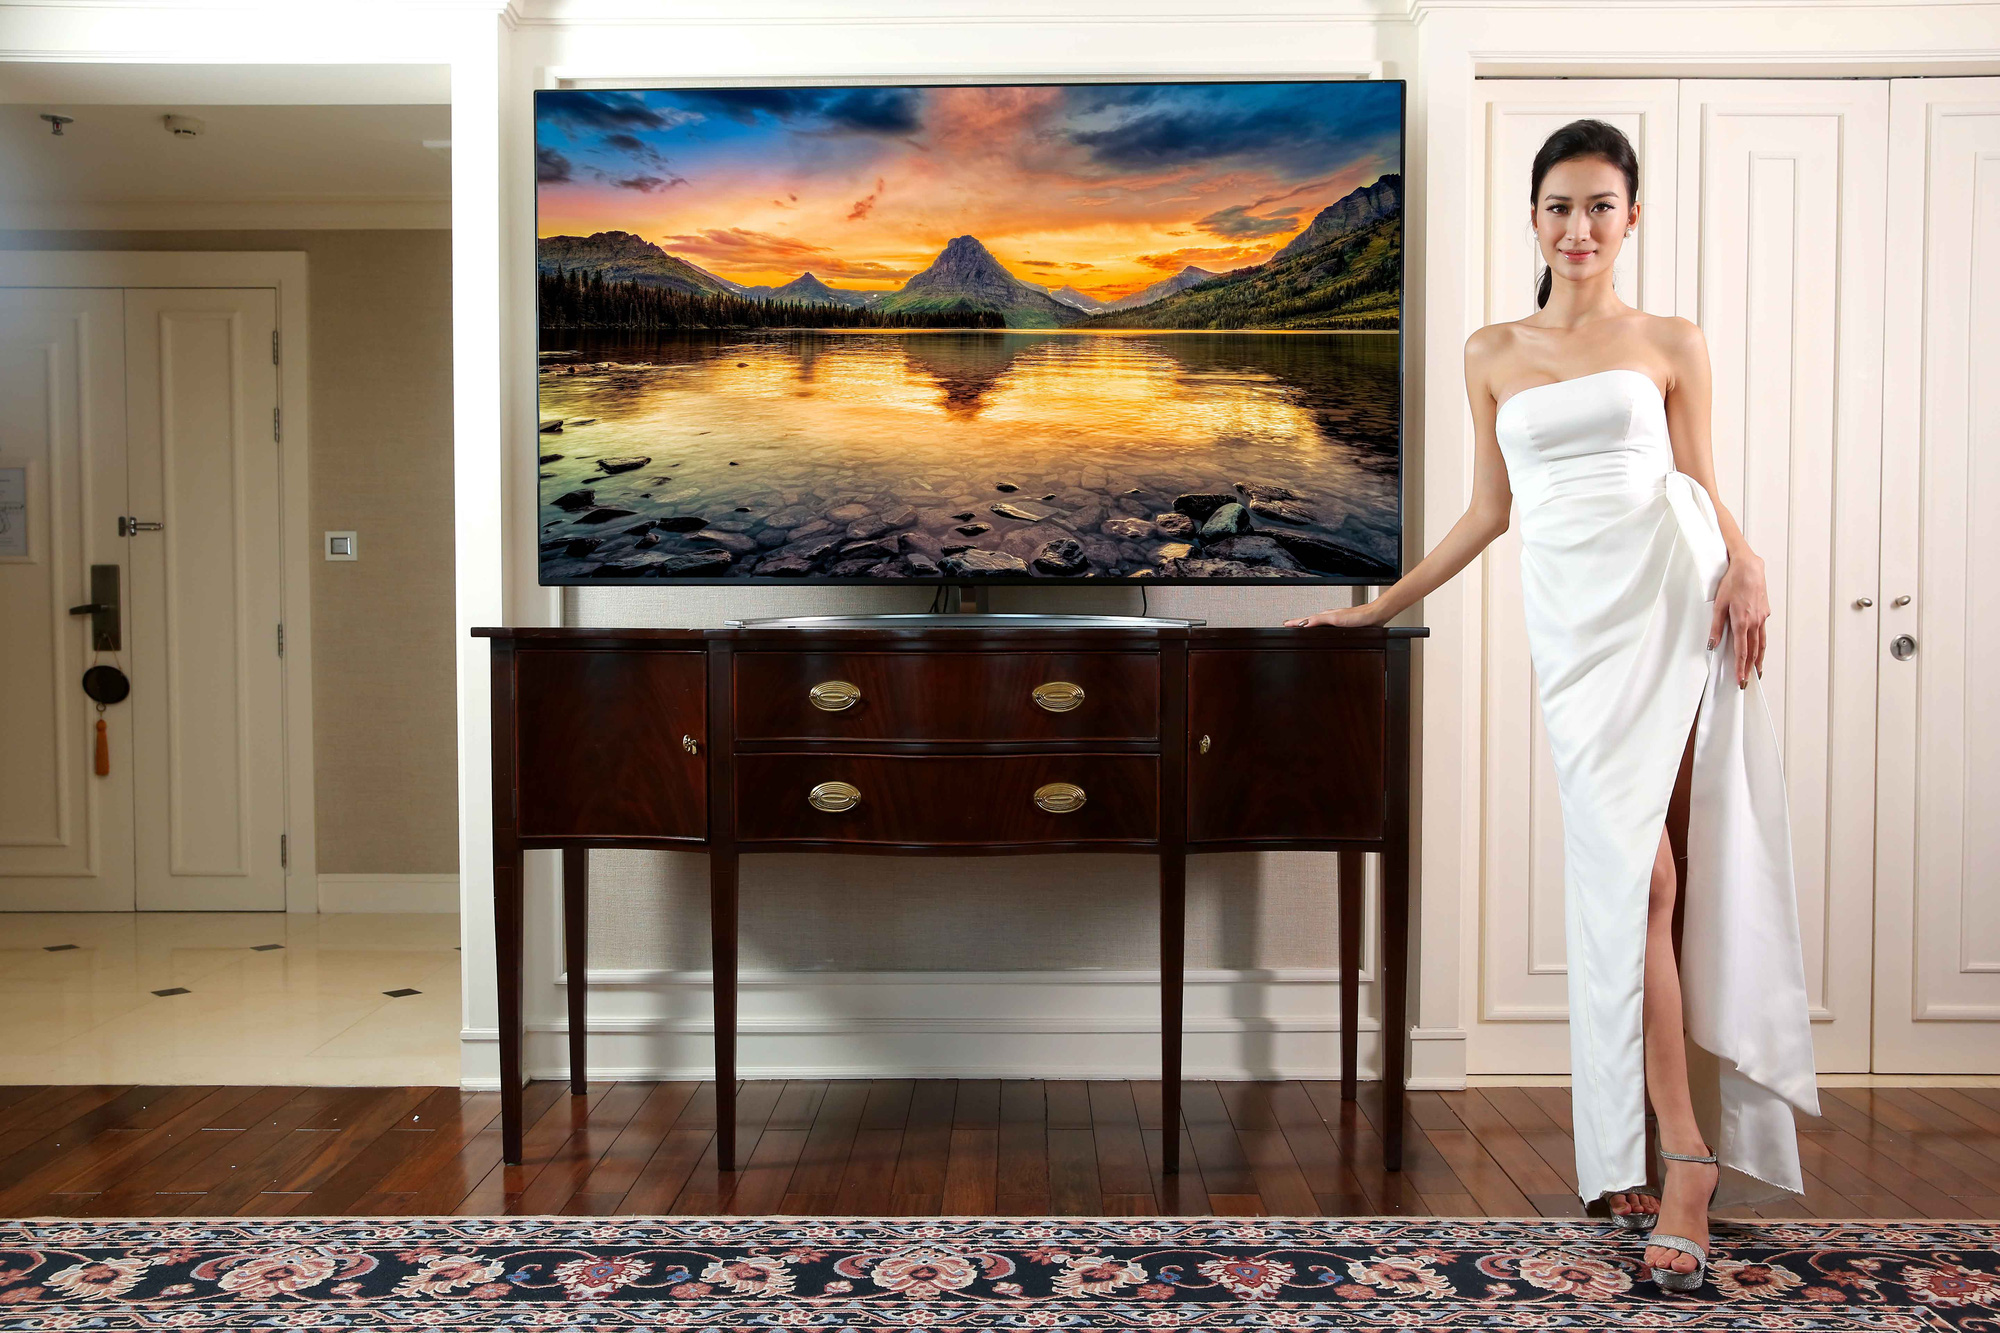 LG ra mắt TV 8K giá 199 triệu đối đầu với Samsung QLED 8K - Ảnh 1.